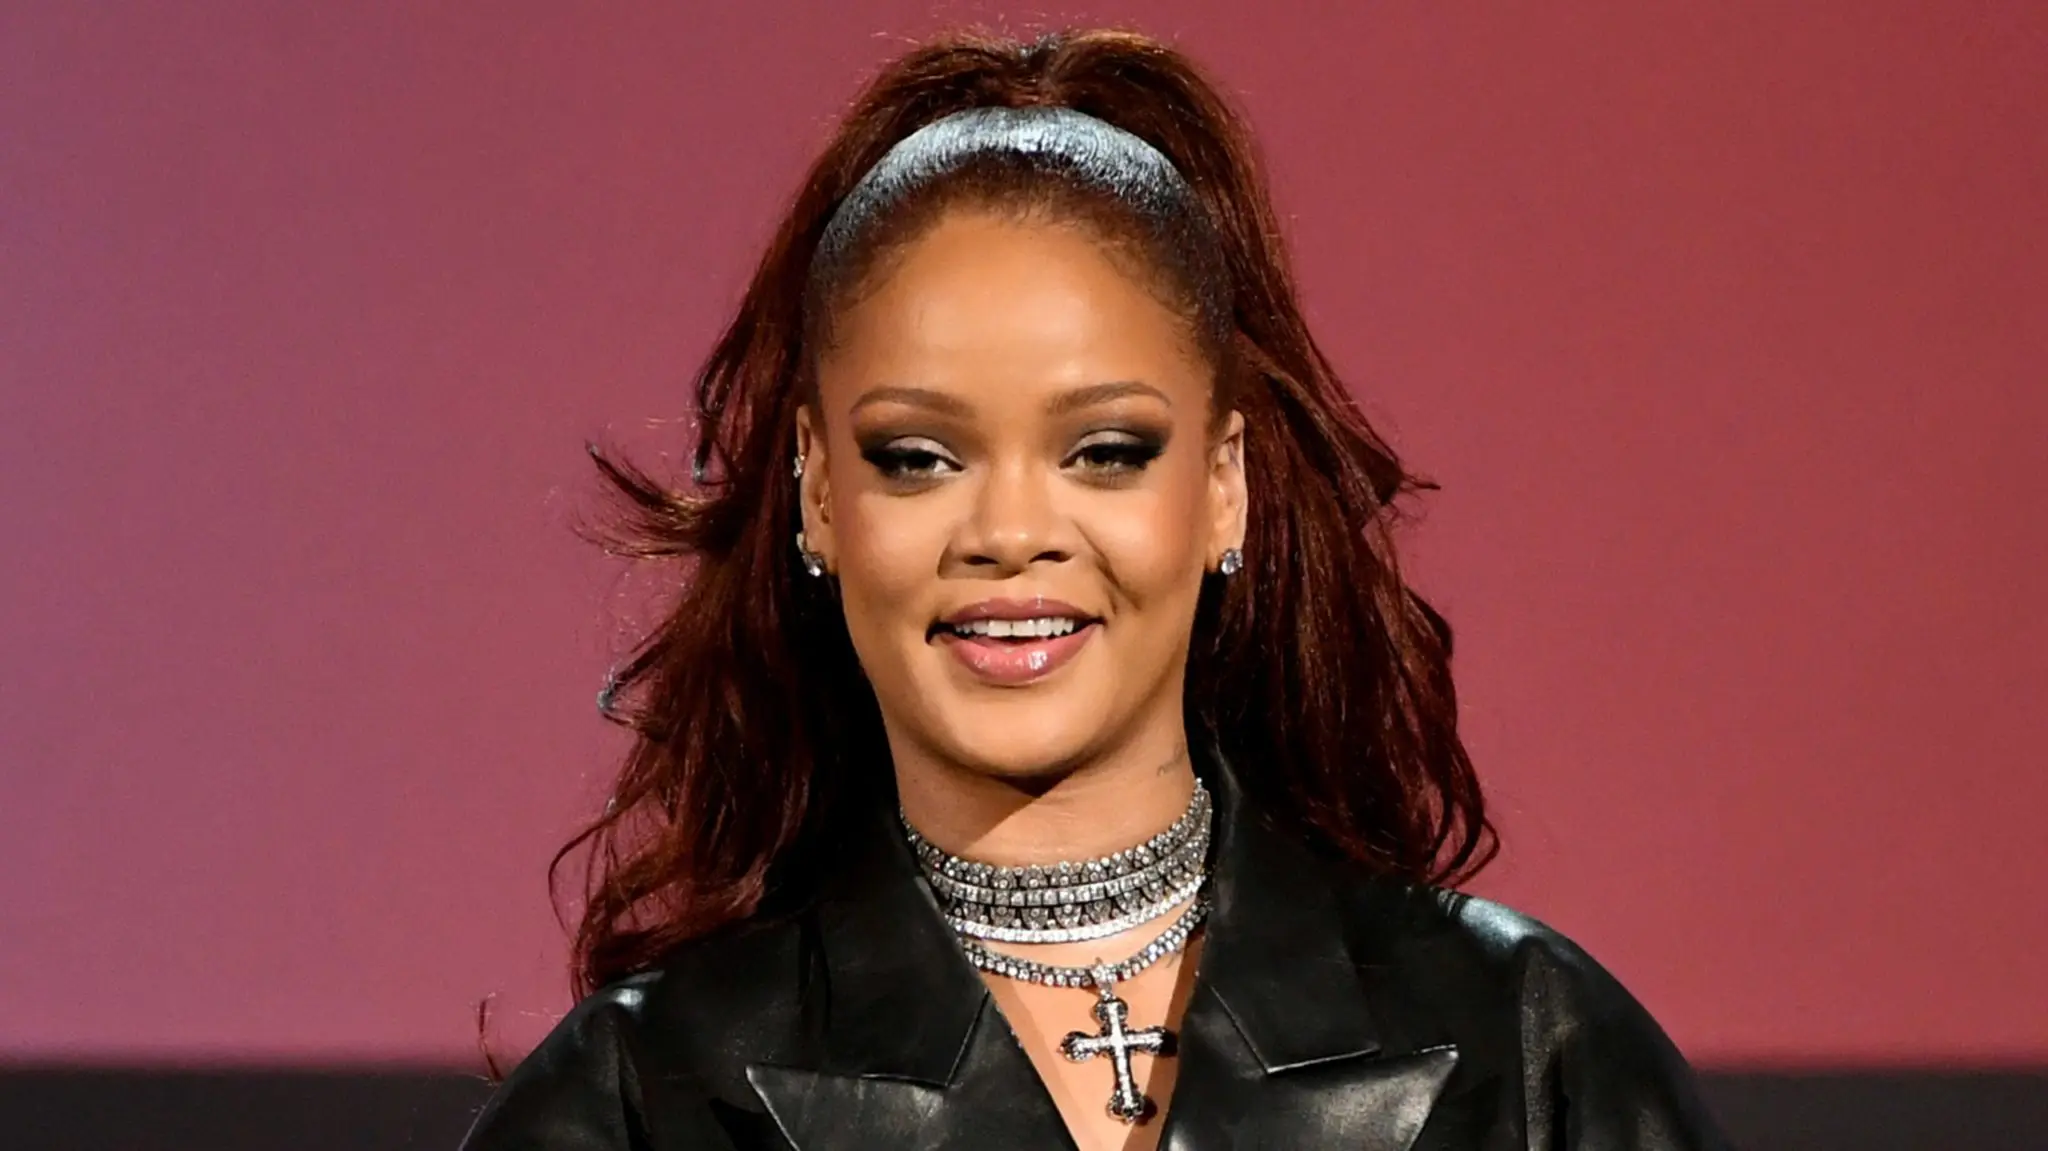 Rihanna (Рианна): Биография певицы